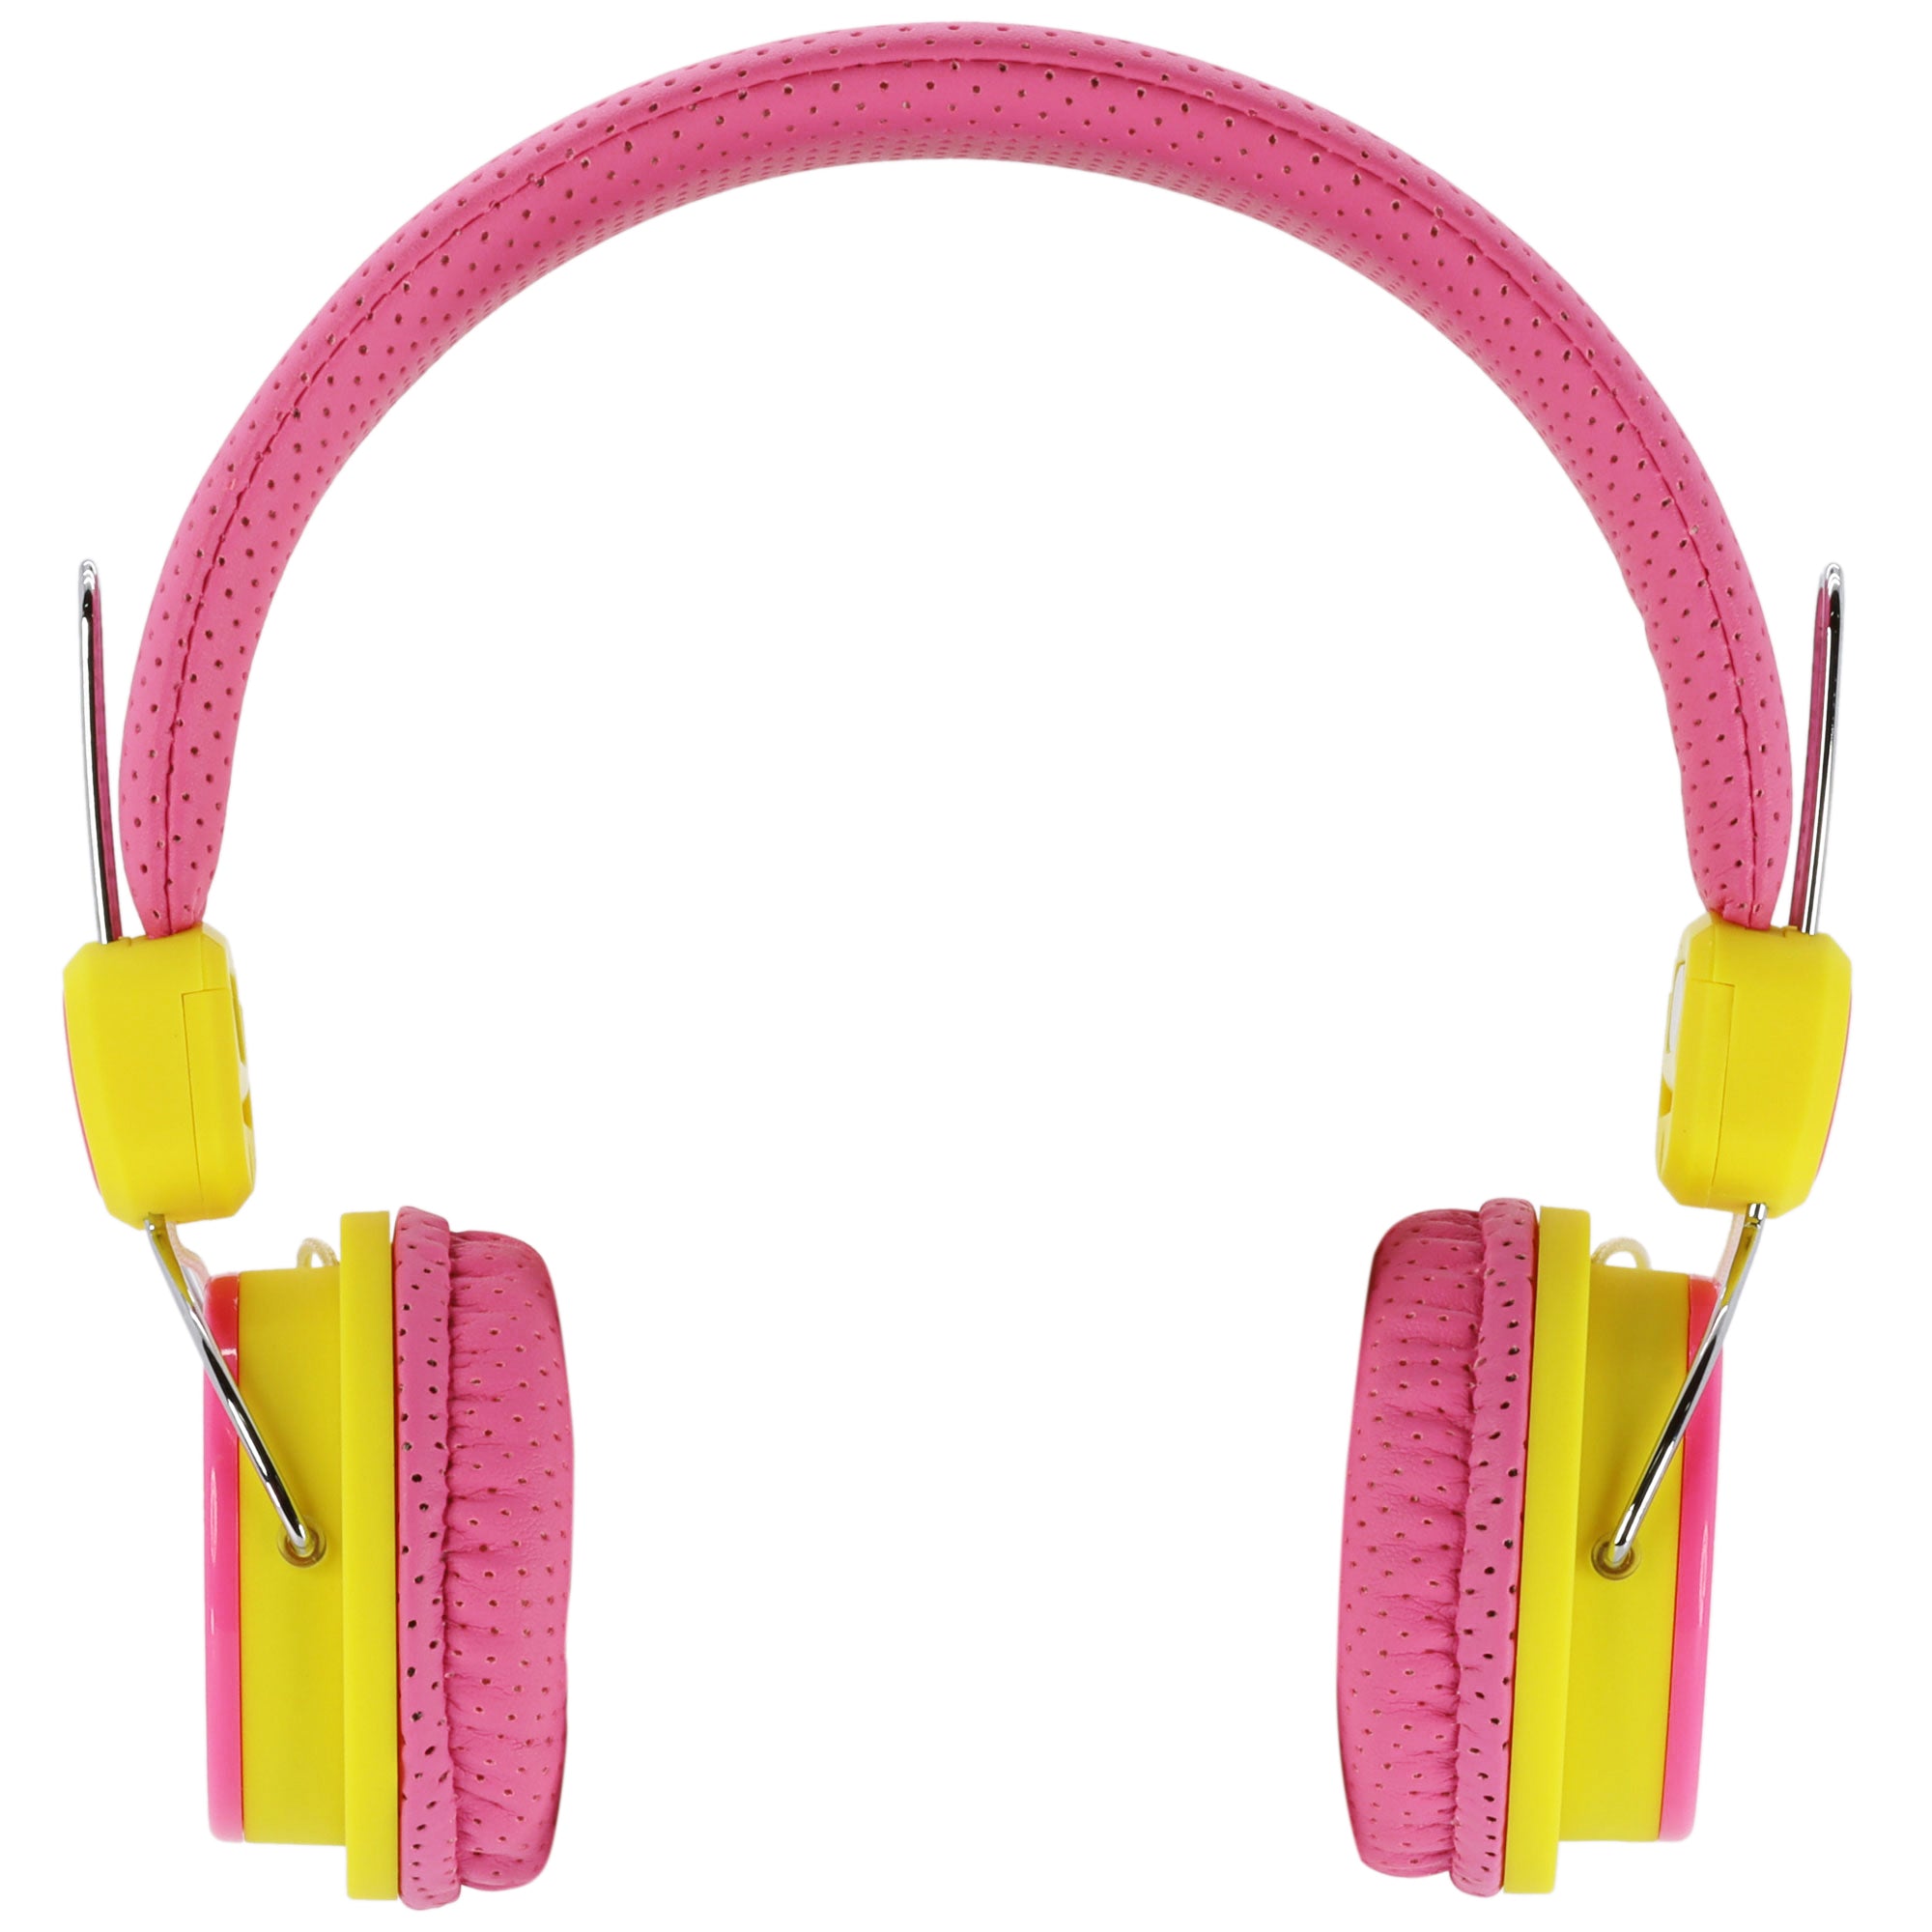 Kid Safe Volume Limited Headphones